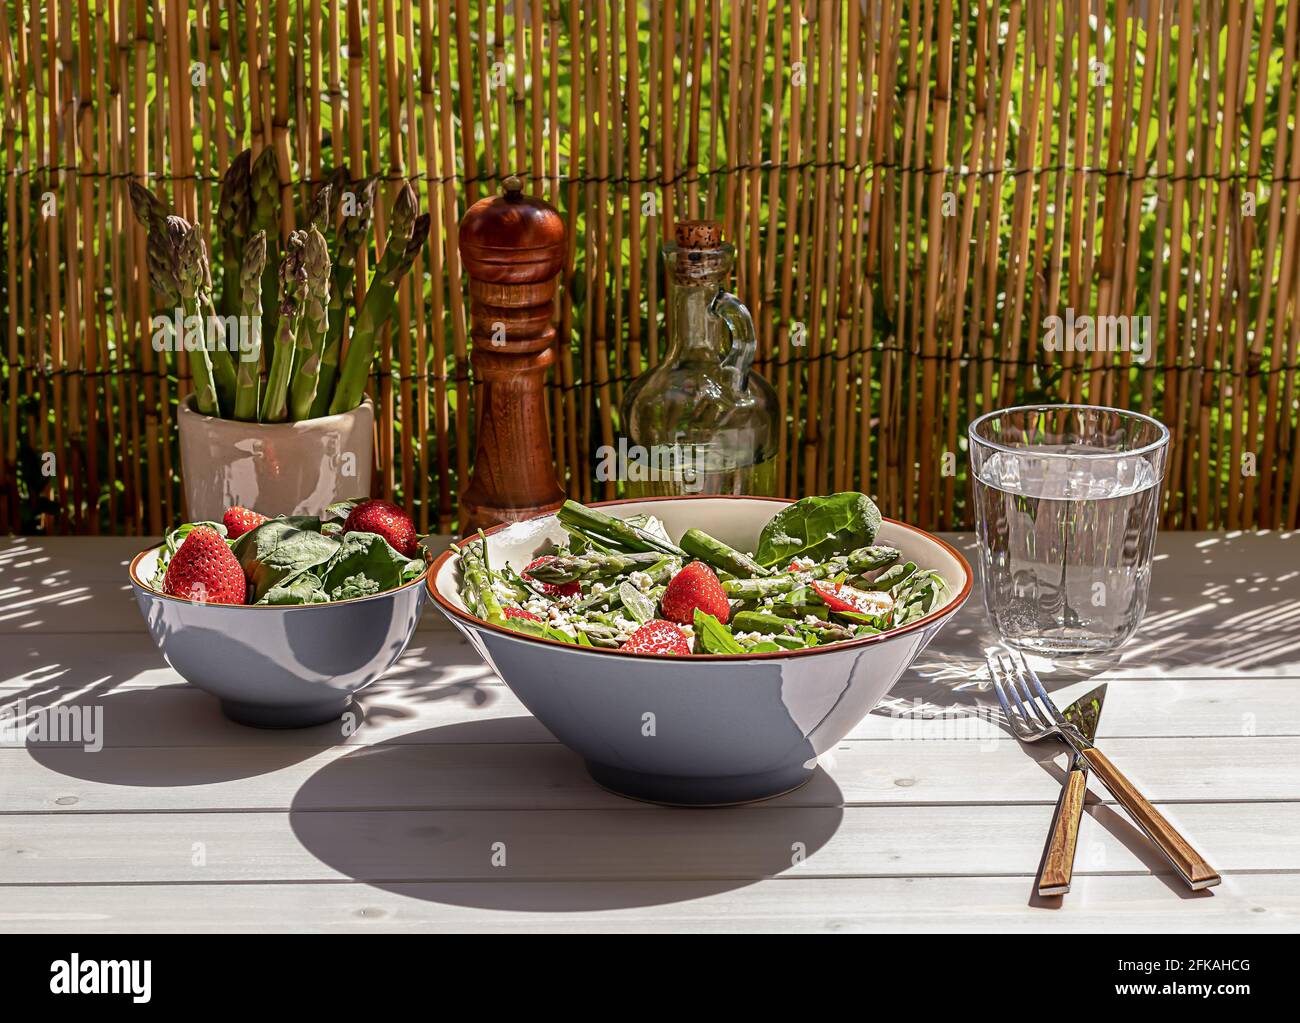 Frische Erdbeeren, grüner Spargel, Feta-Käse, Babyspinat und Rucola-Salat in einer Schüssel serviert Stockfoto